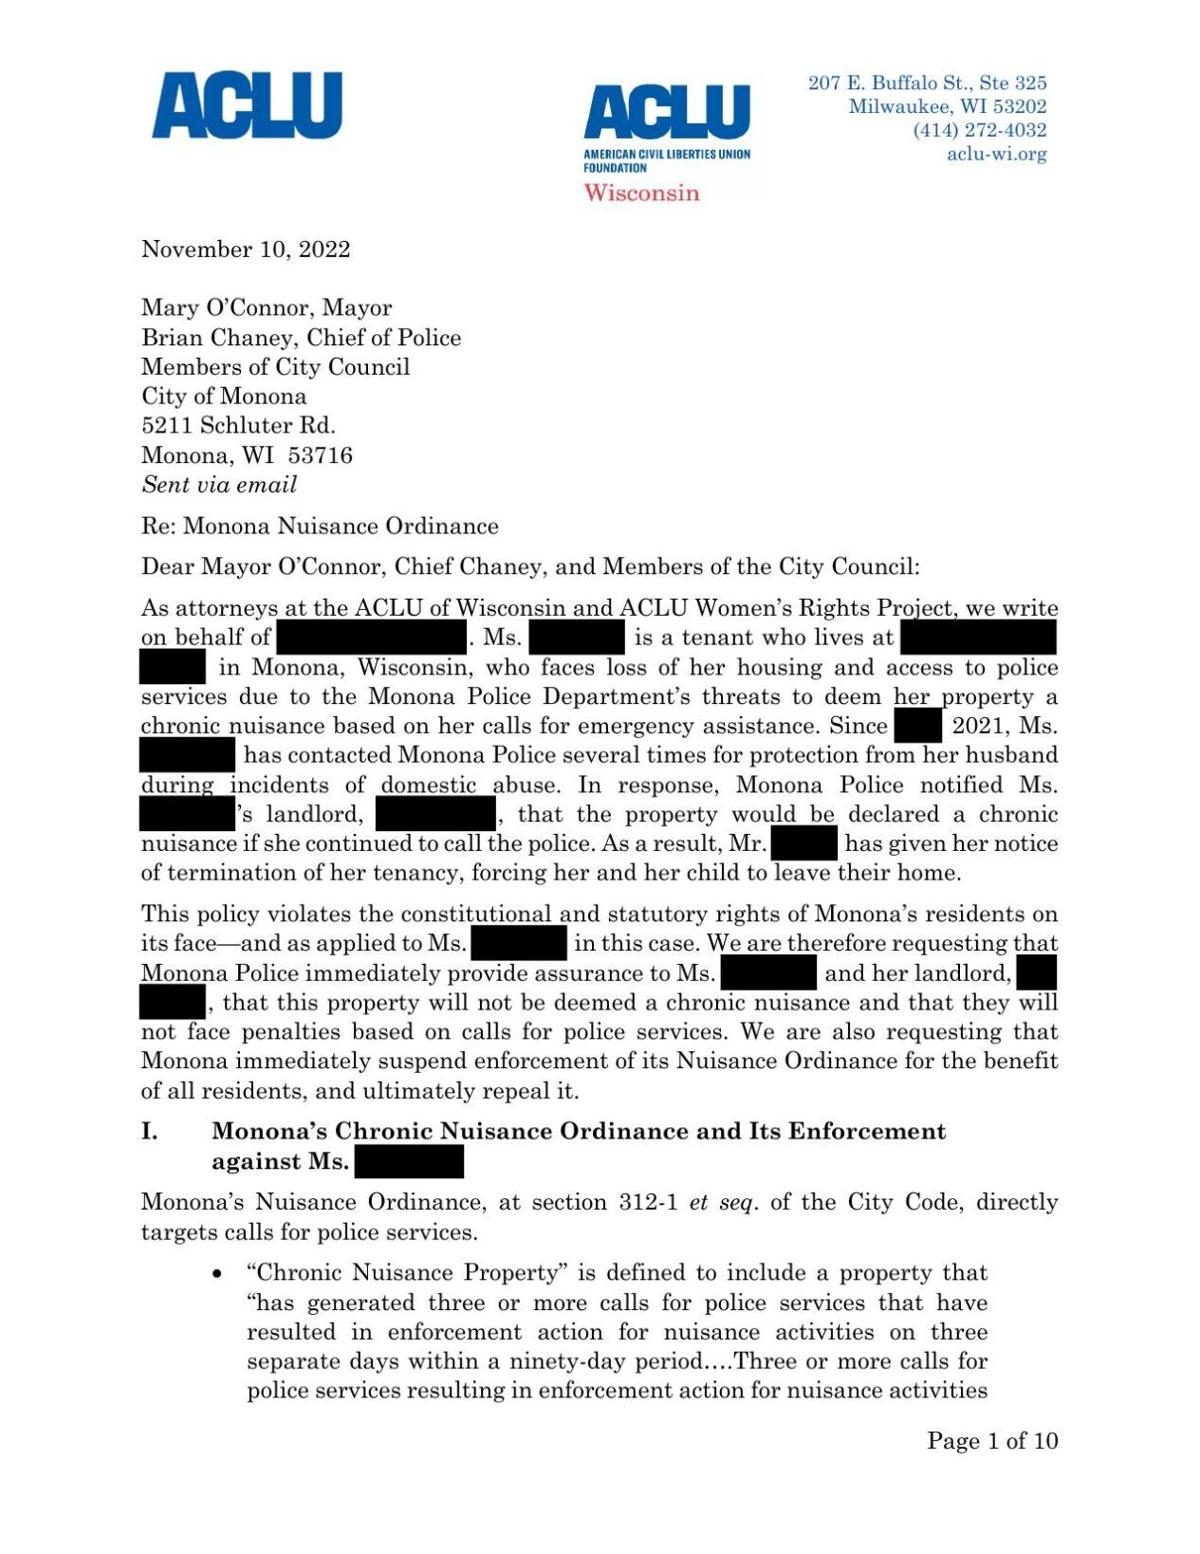 Nov. 10, 2022, ACLU letter, redacted